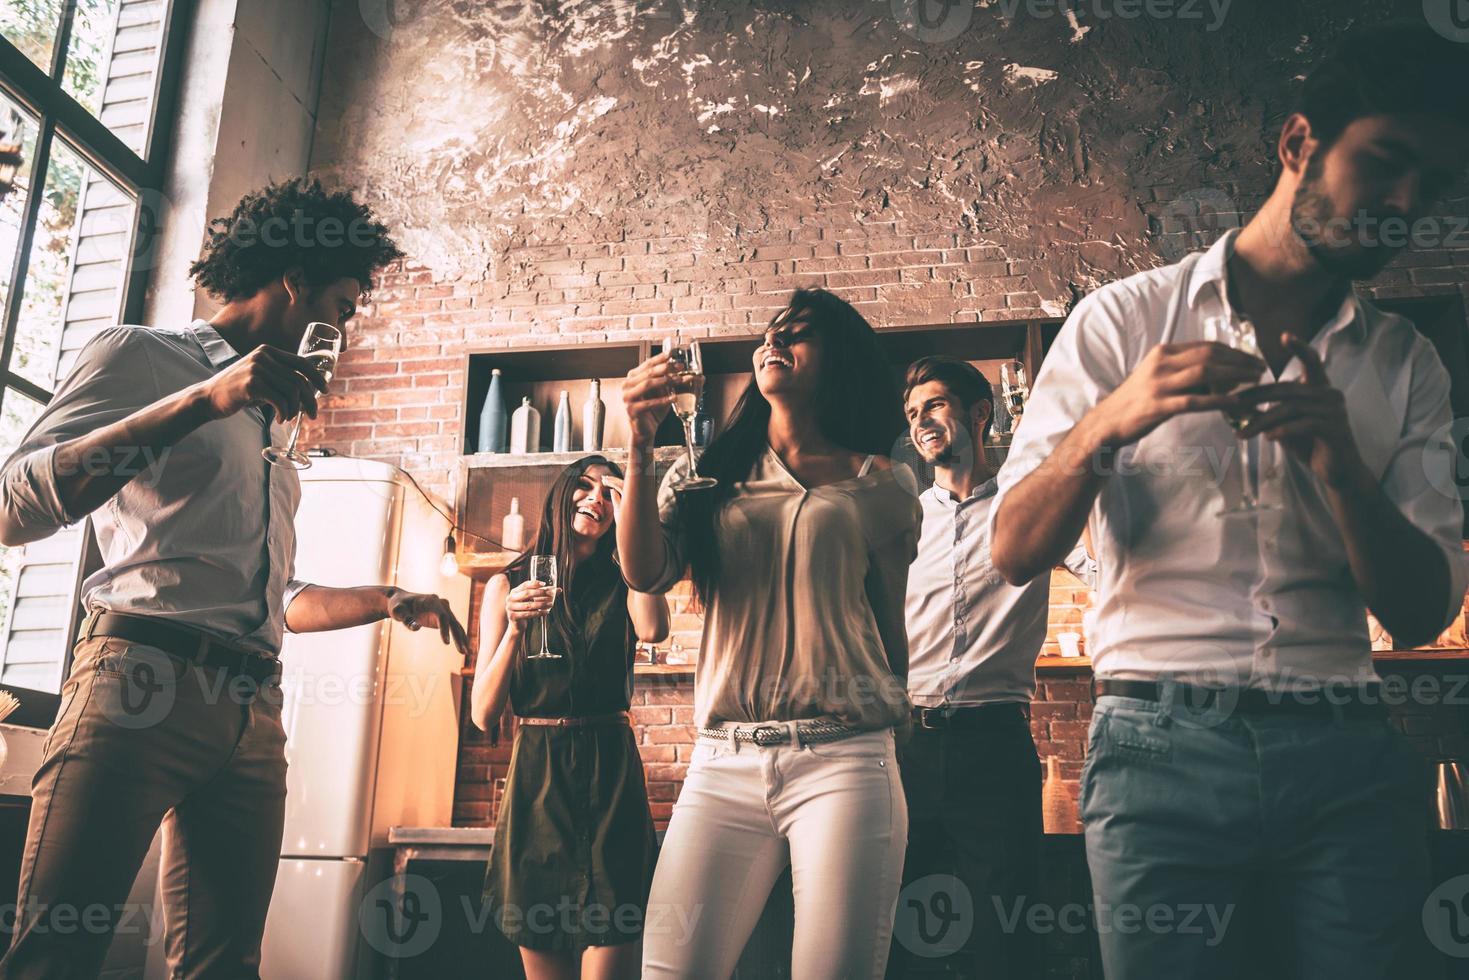 solo baila vista de ángulo bajo de jóvenes alegres bailando y bebiendo mientras disfruta de la fiesta en casa en la cocina foto